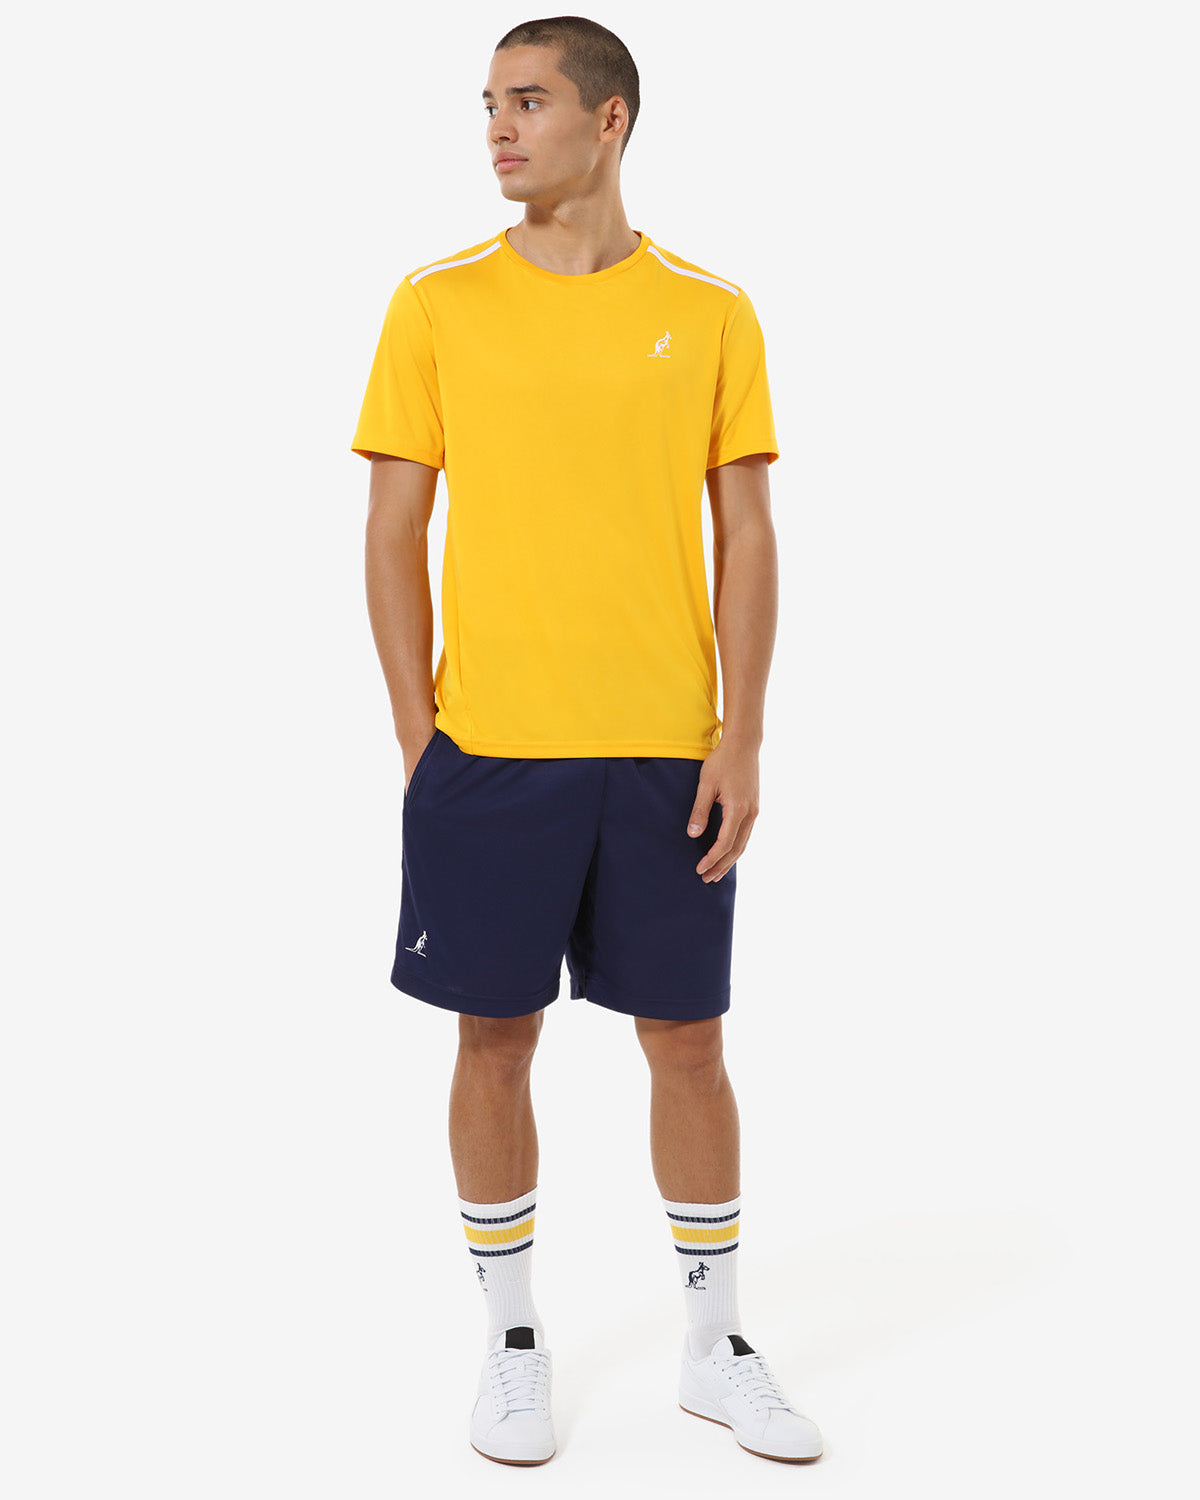 T-Shirt Ace: Australian Tennis